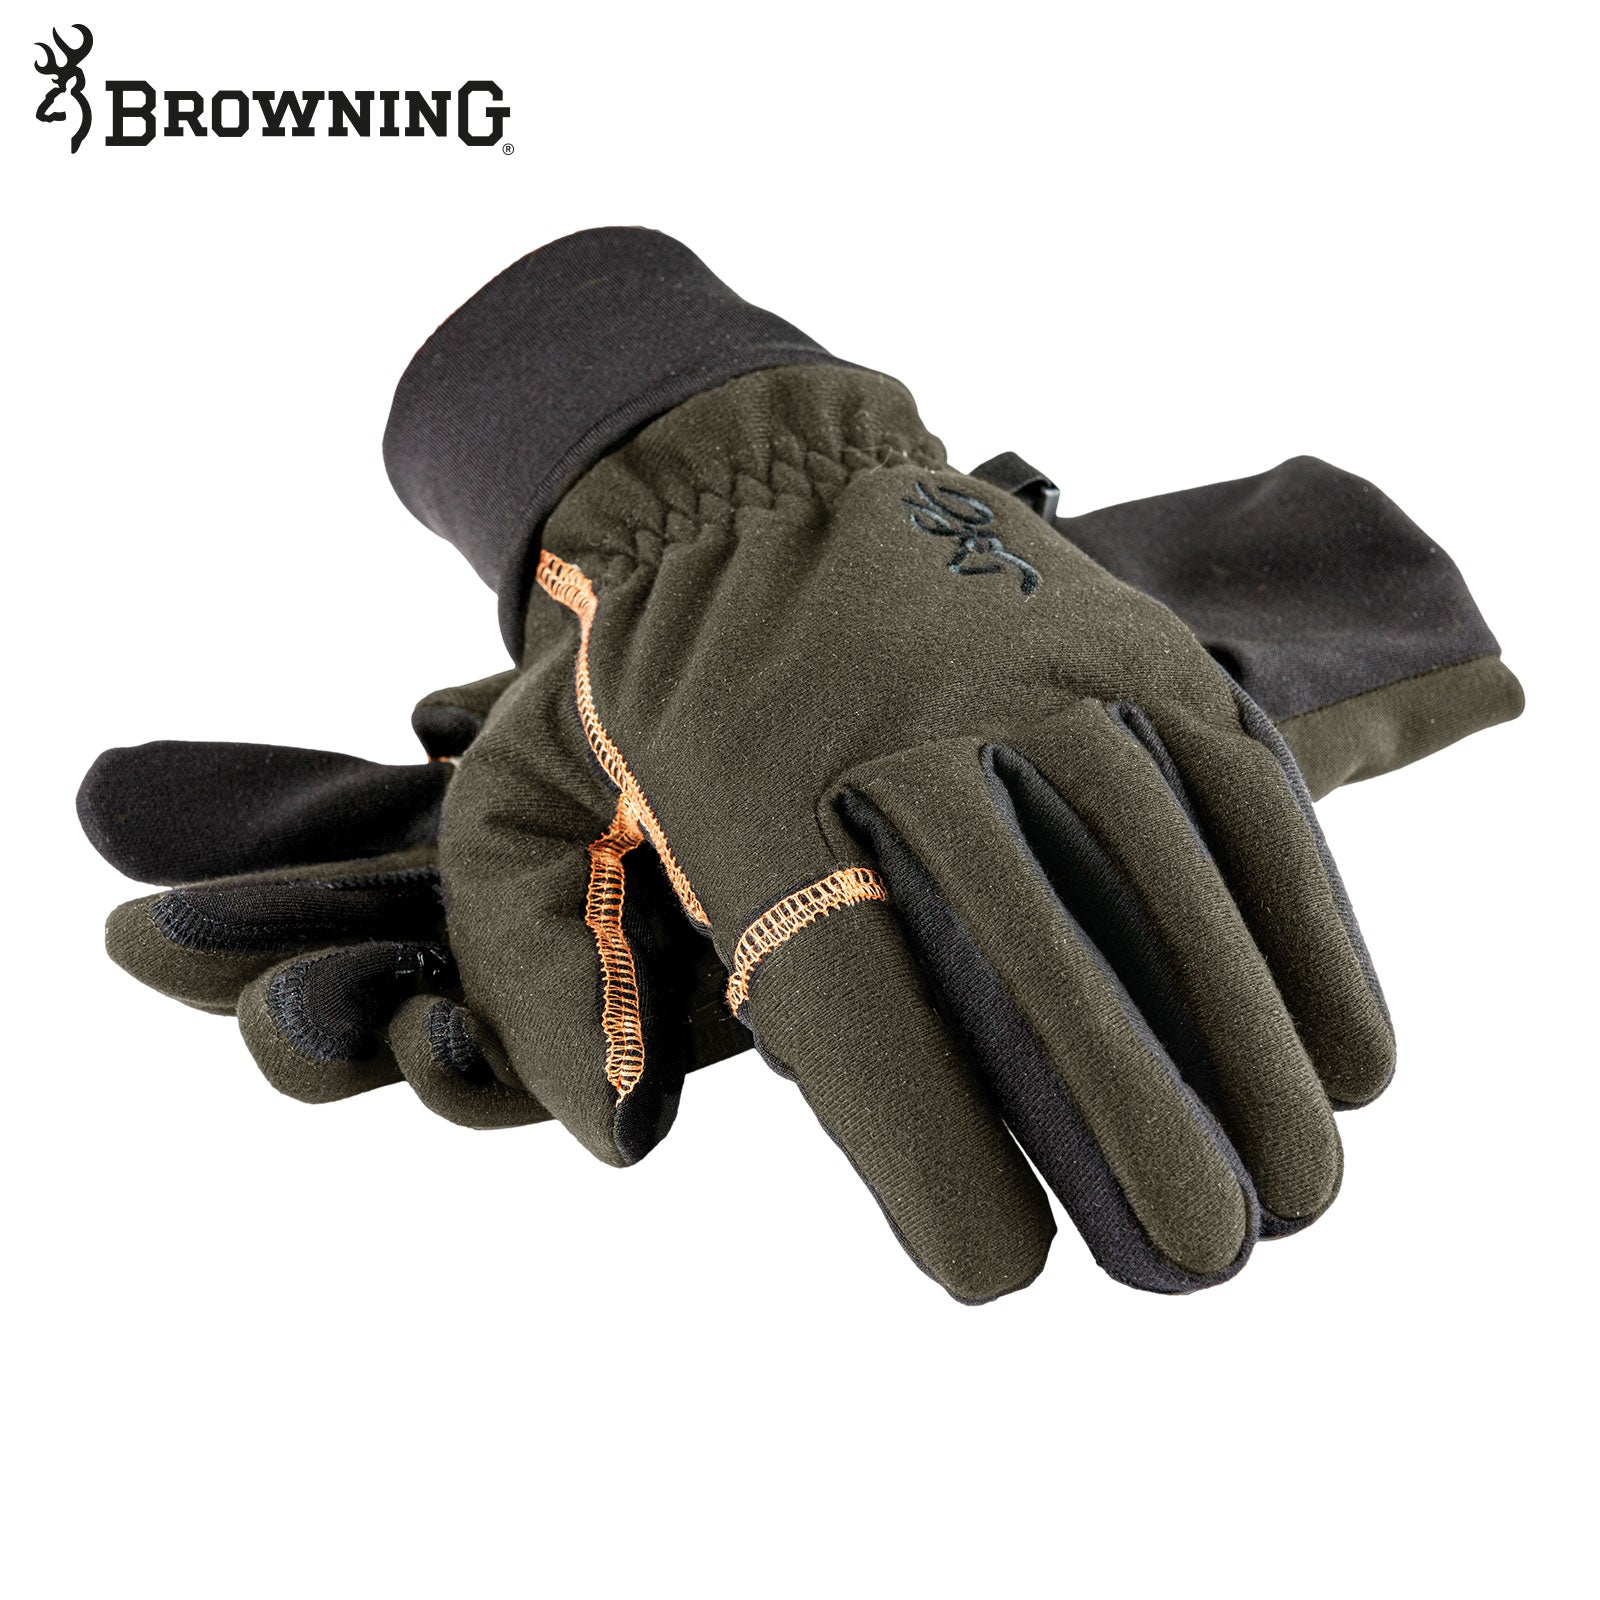 Es handelt sich hier um BROWNING Handschuh Winter für die Jagd.